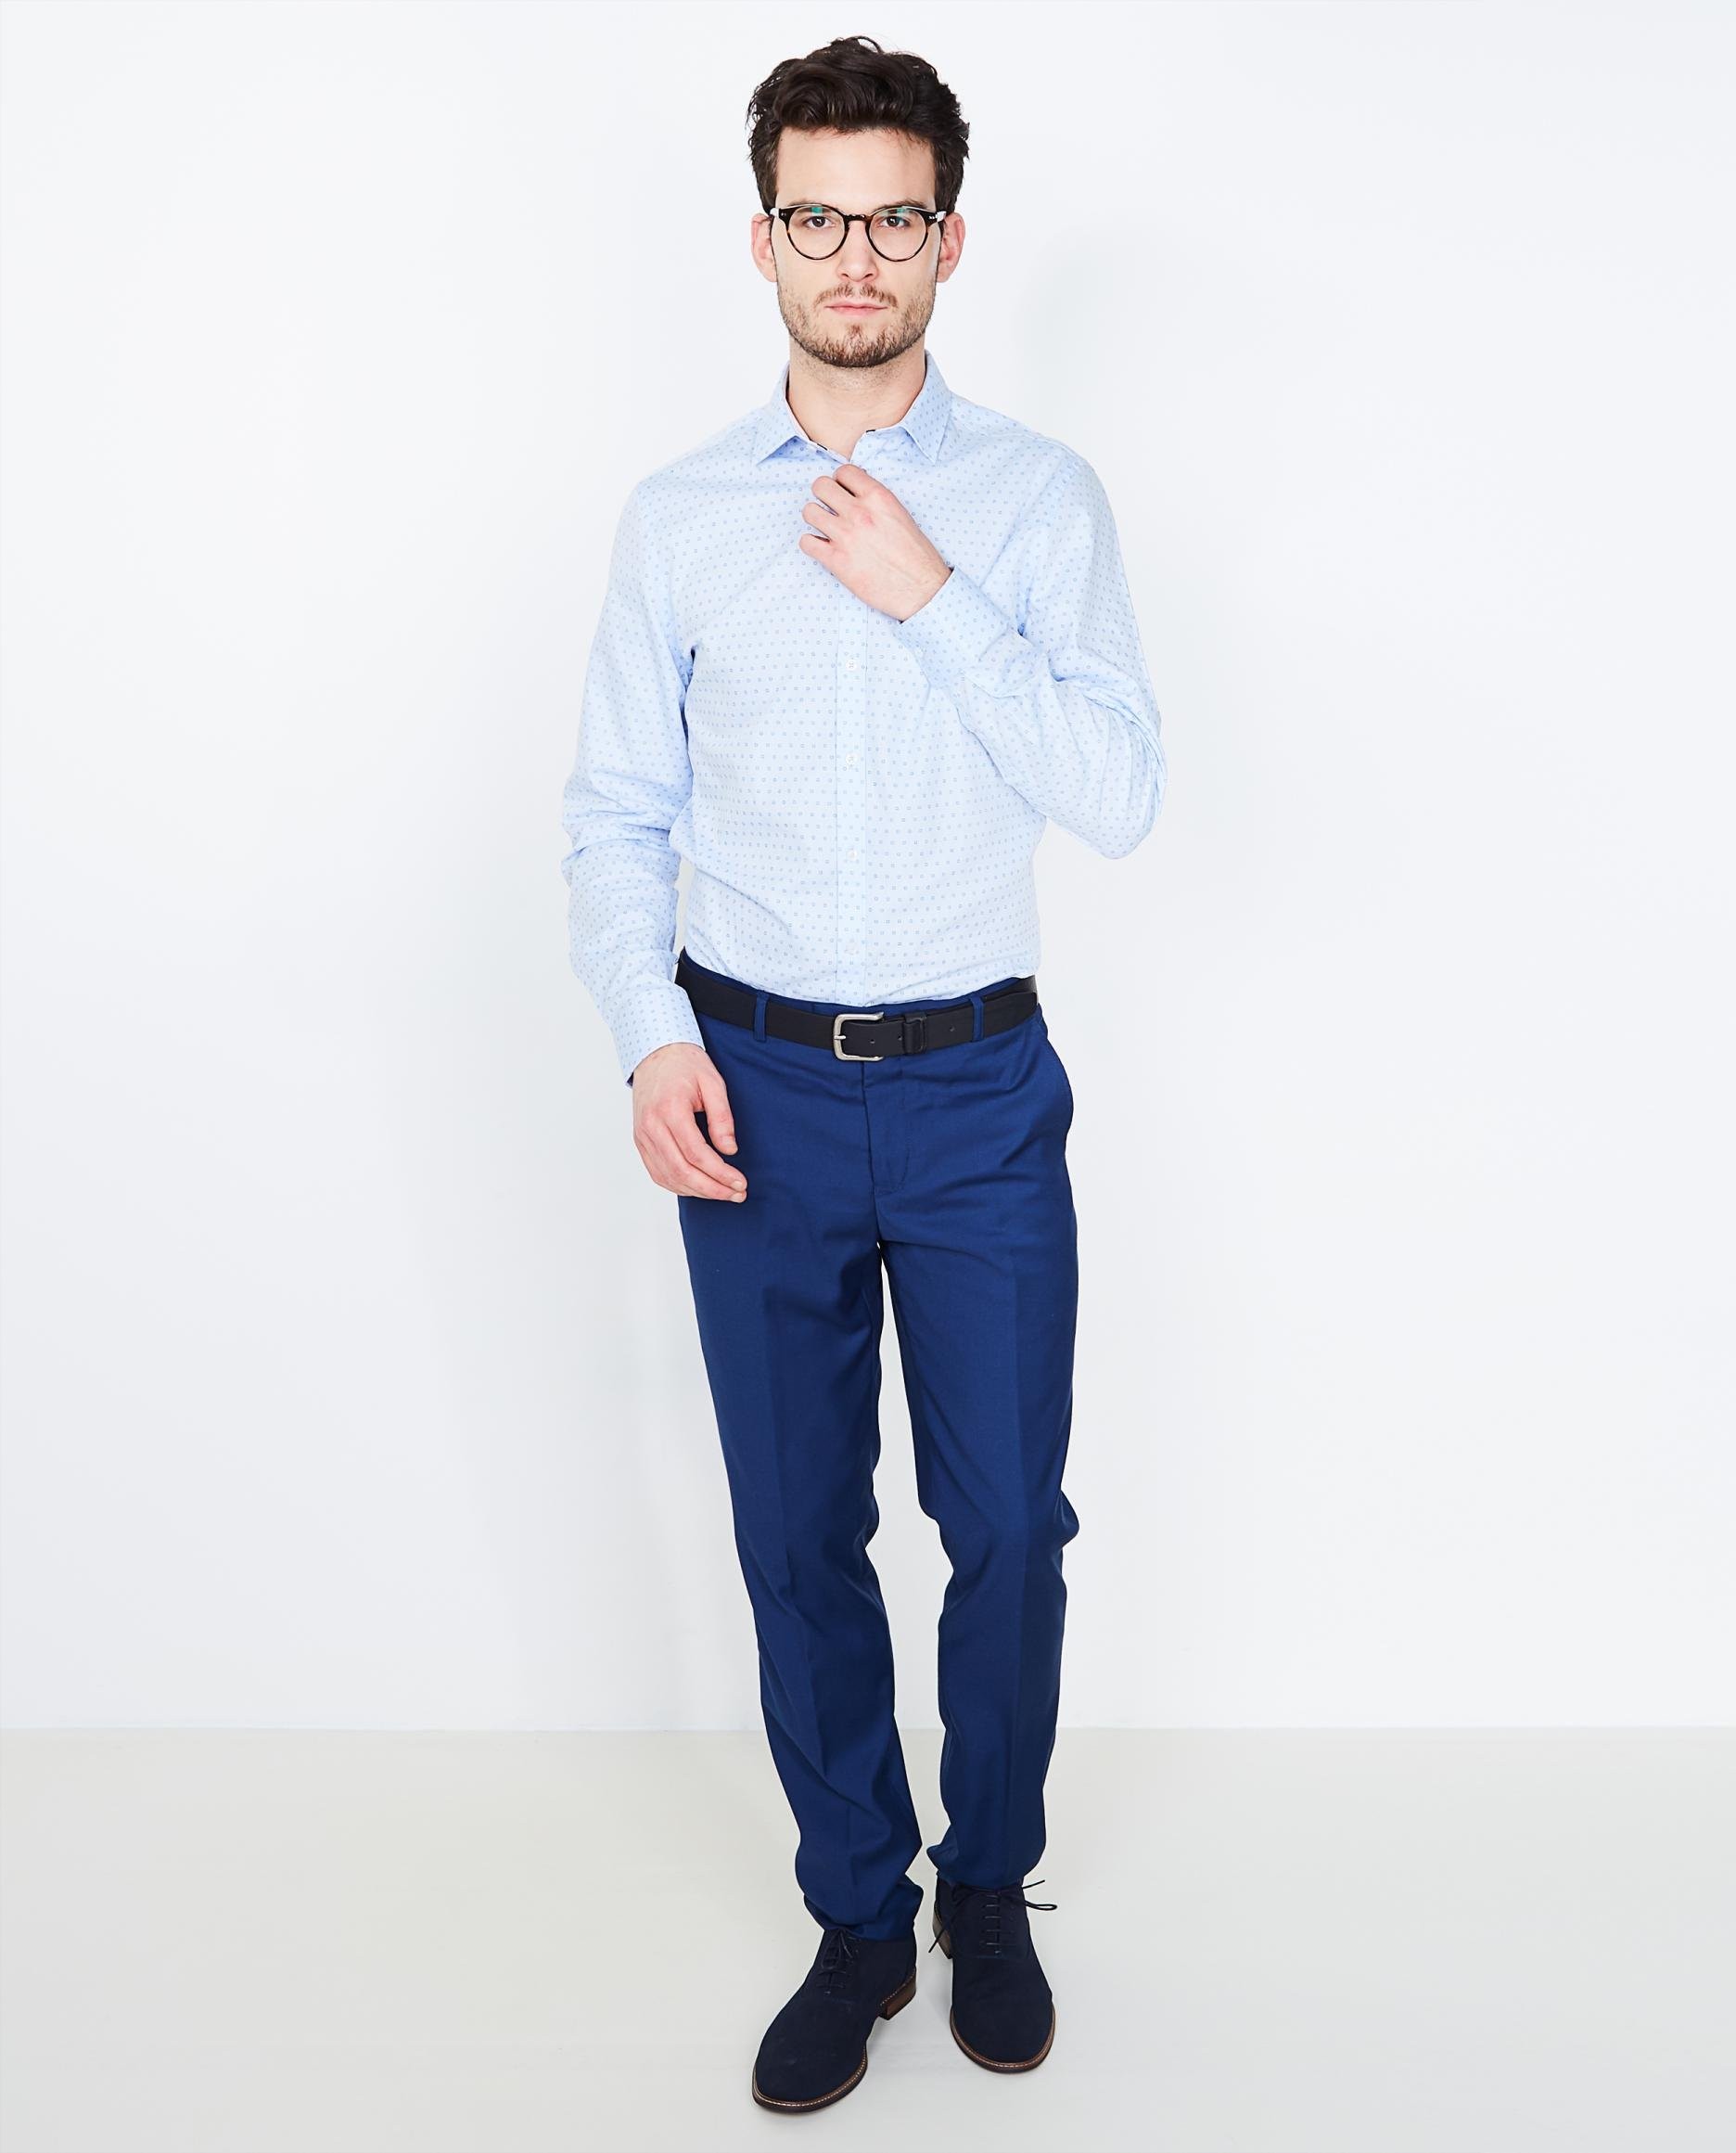 Hemden - Lichtblauw slim fit hemd